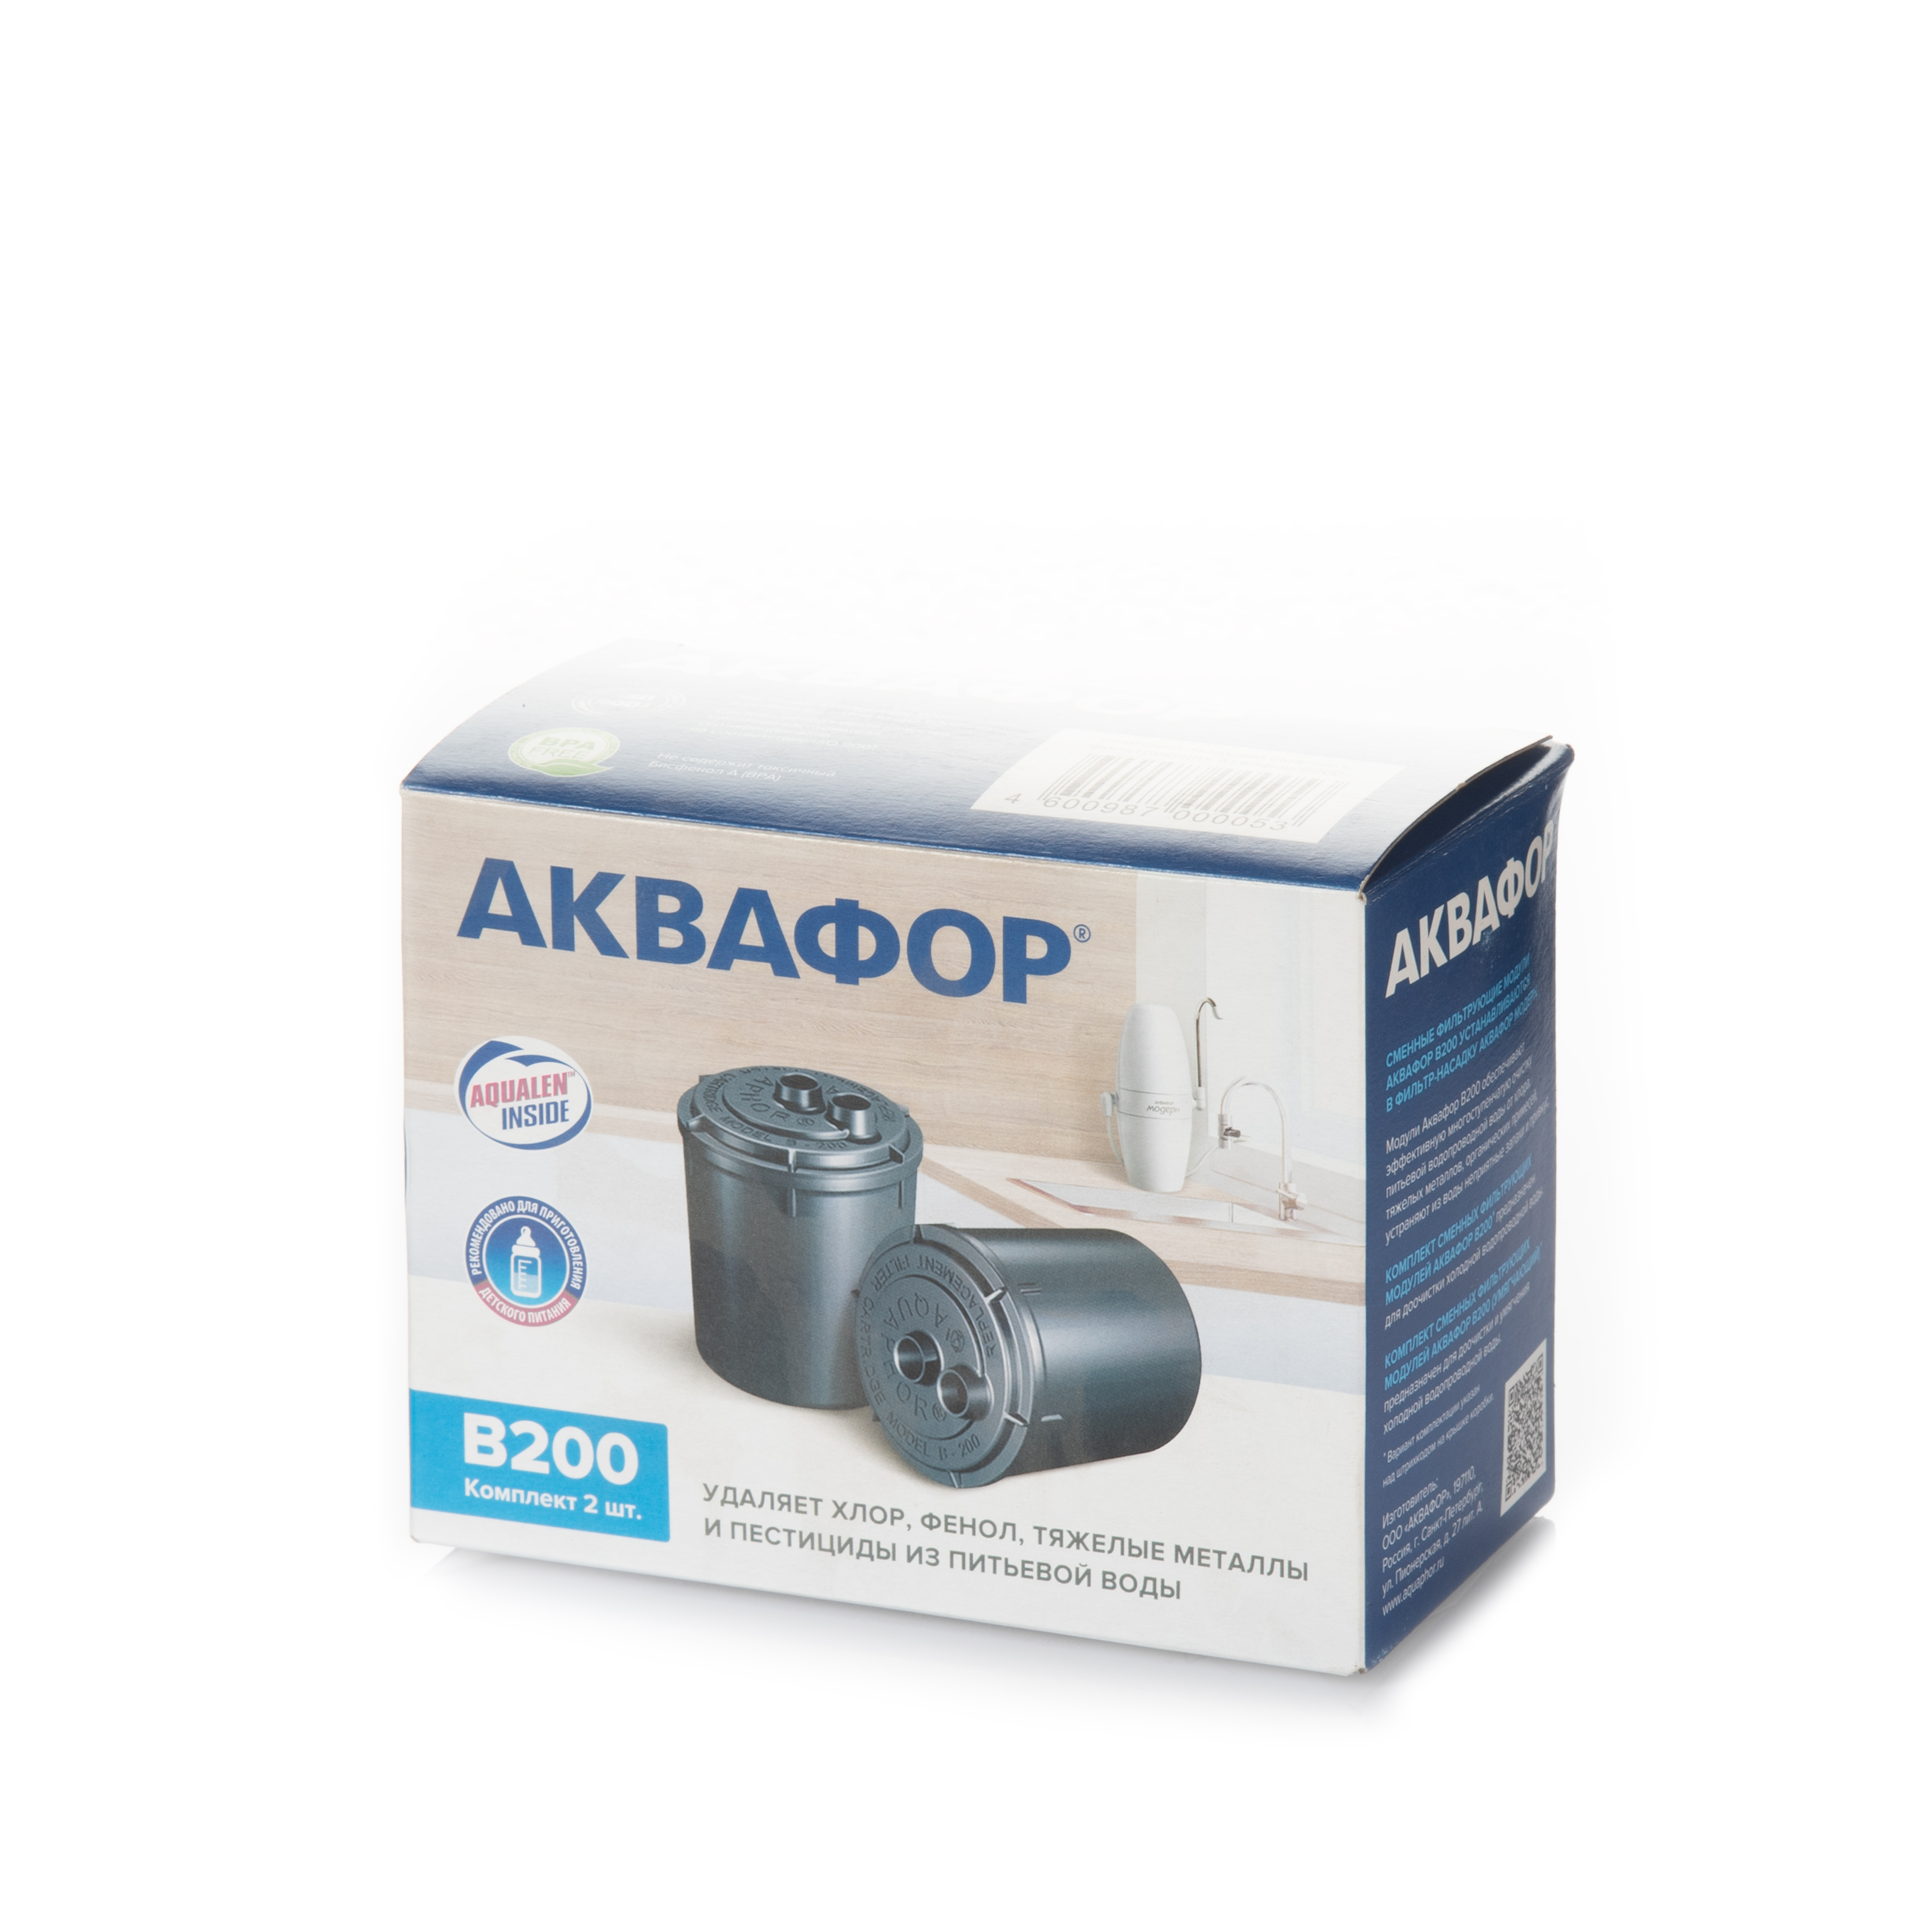 Картридж Аквафор для холодной воды Aquaphor B200